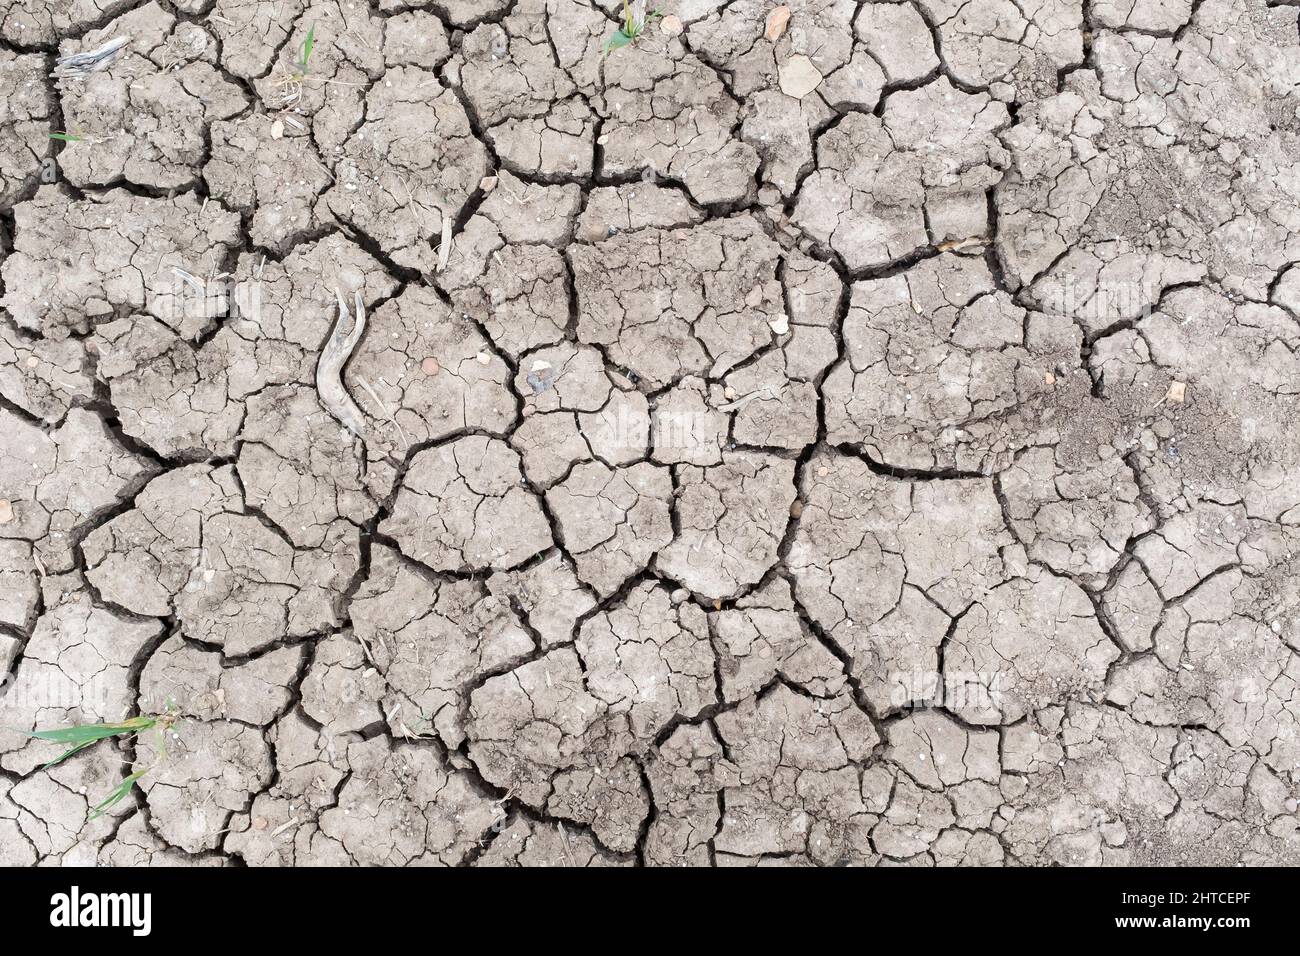 Fondo, struttura o pattern del concetto di riscaldamento globale. Terra secca incrinata con crepe nel fango in un campo Foto Stock